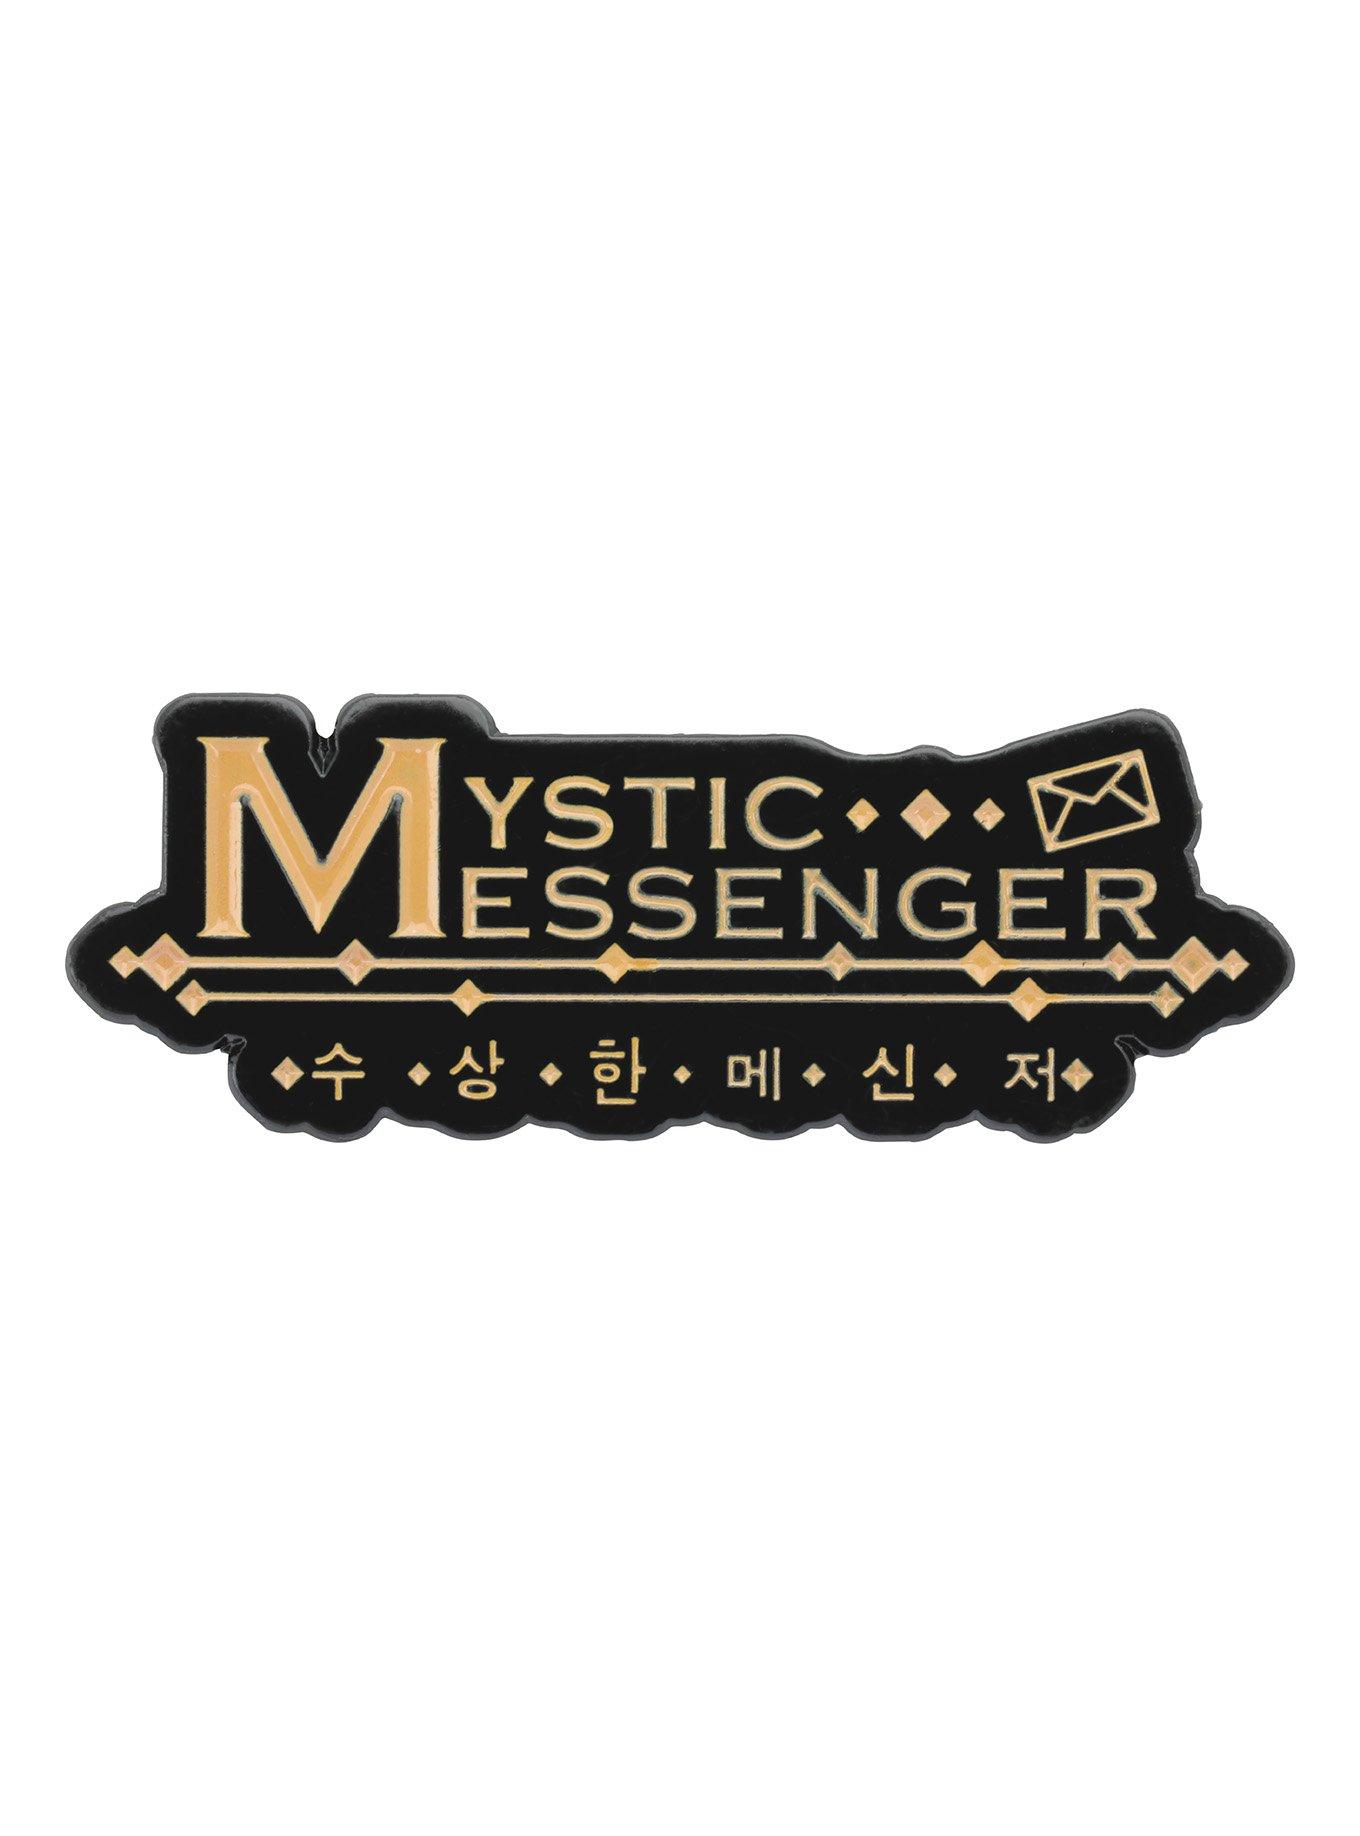 Pin on messenger